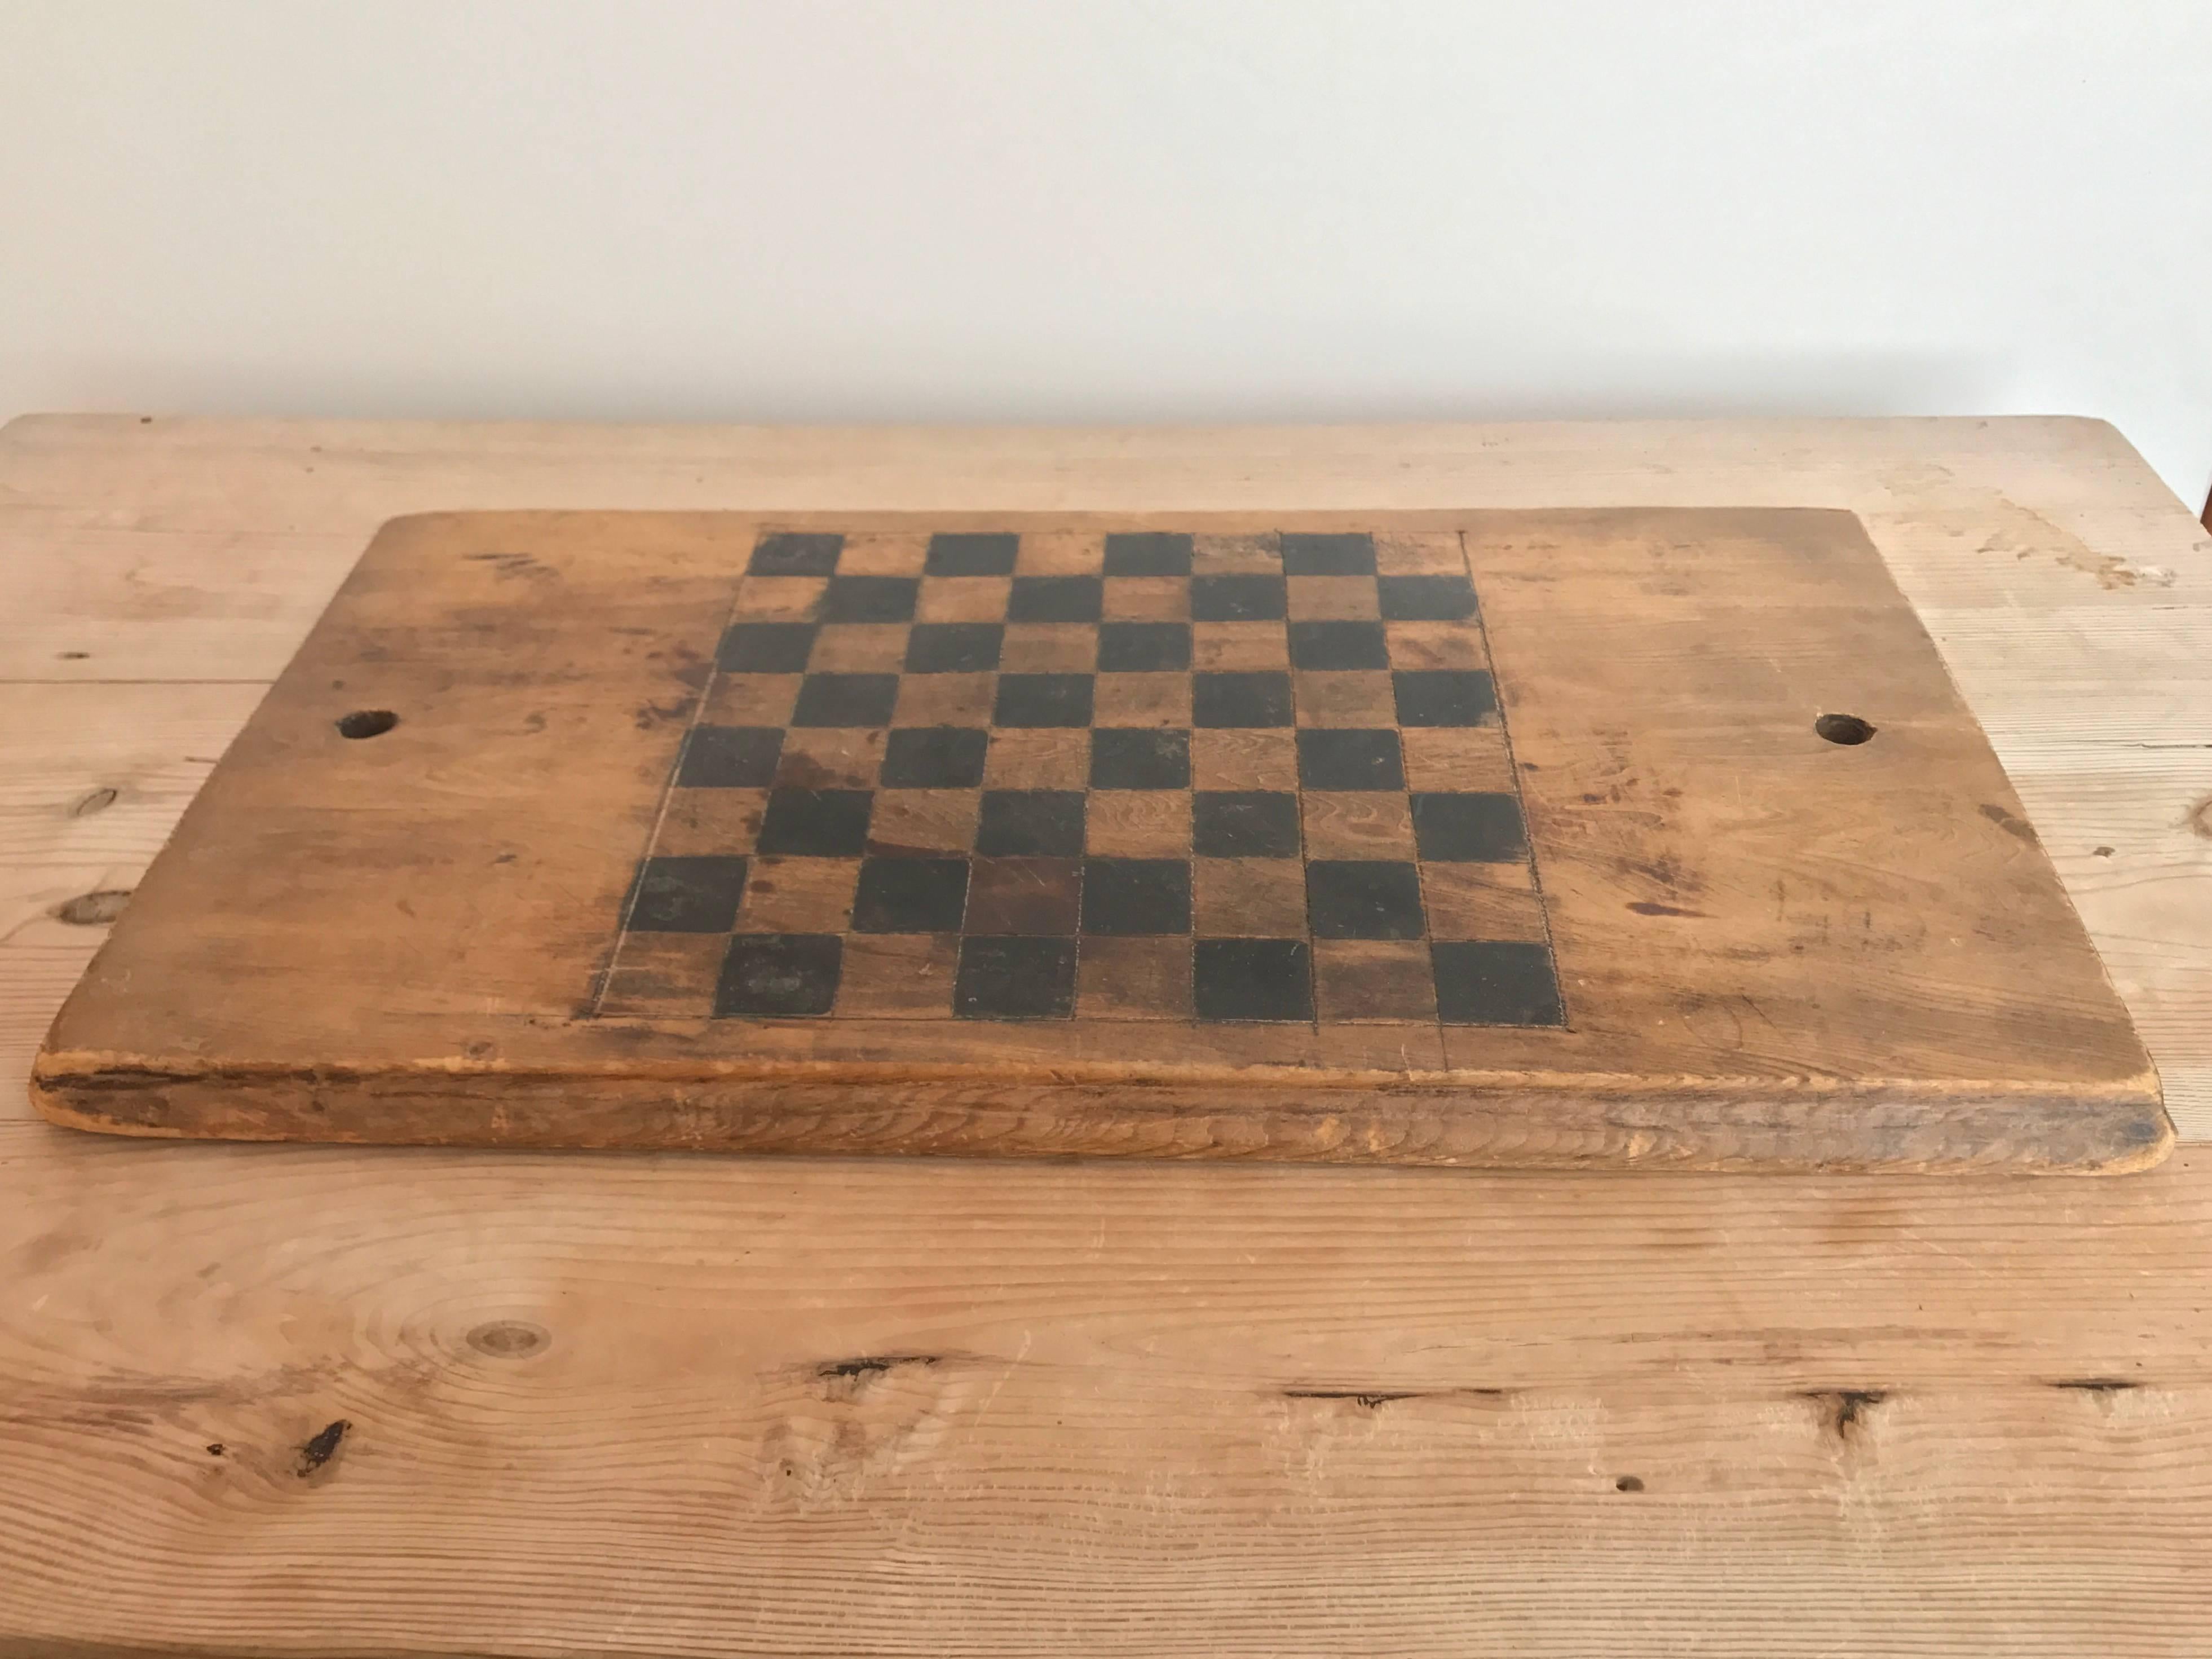 19th century wooden checker board.